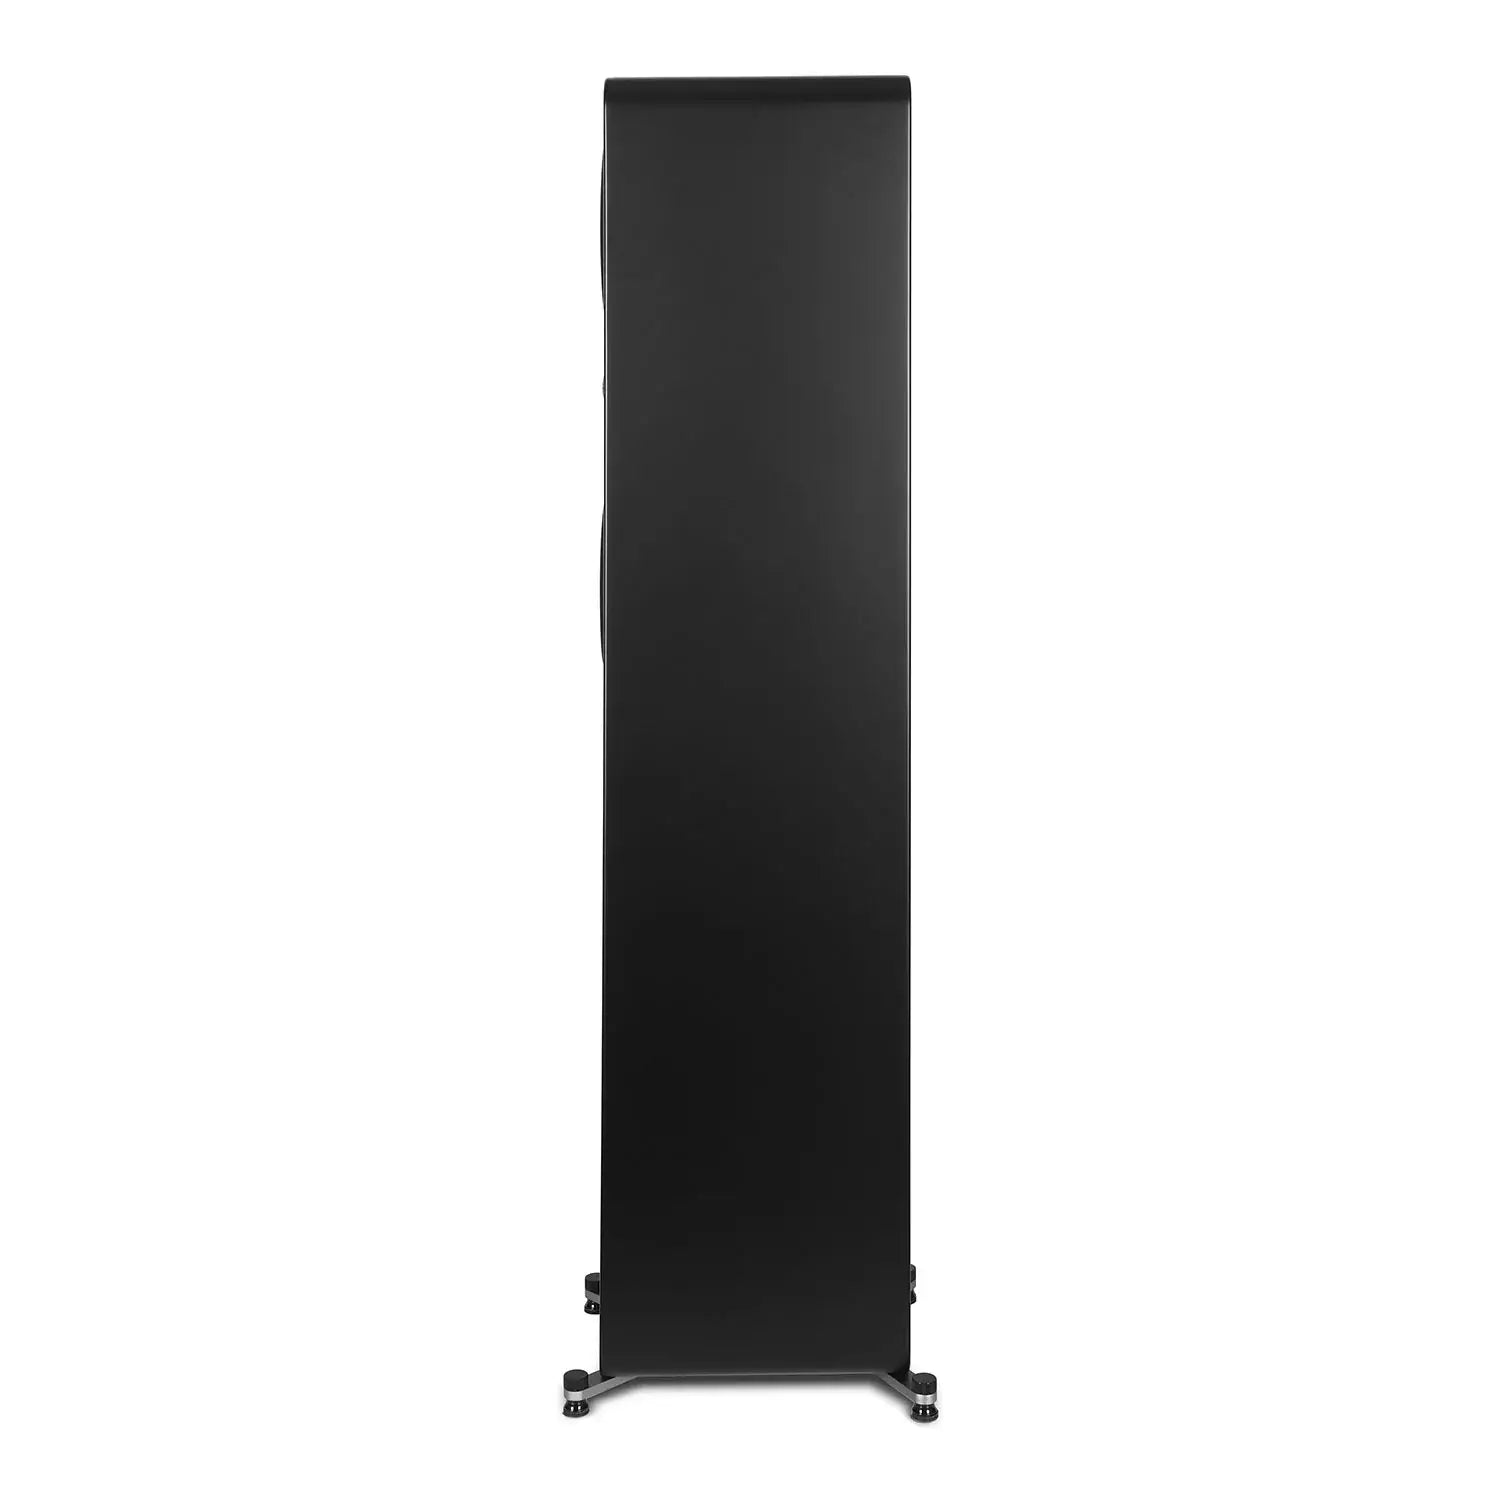 Aperion-Novus-N6T-Dual-6.5"-2-Way-Floorstanding-Tower-Speaker-Side-aperionaudio